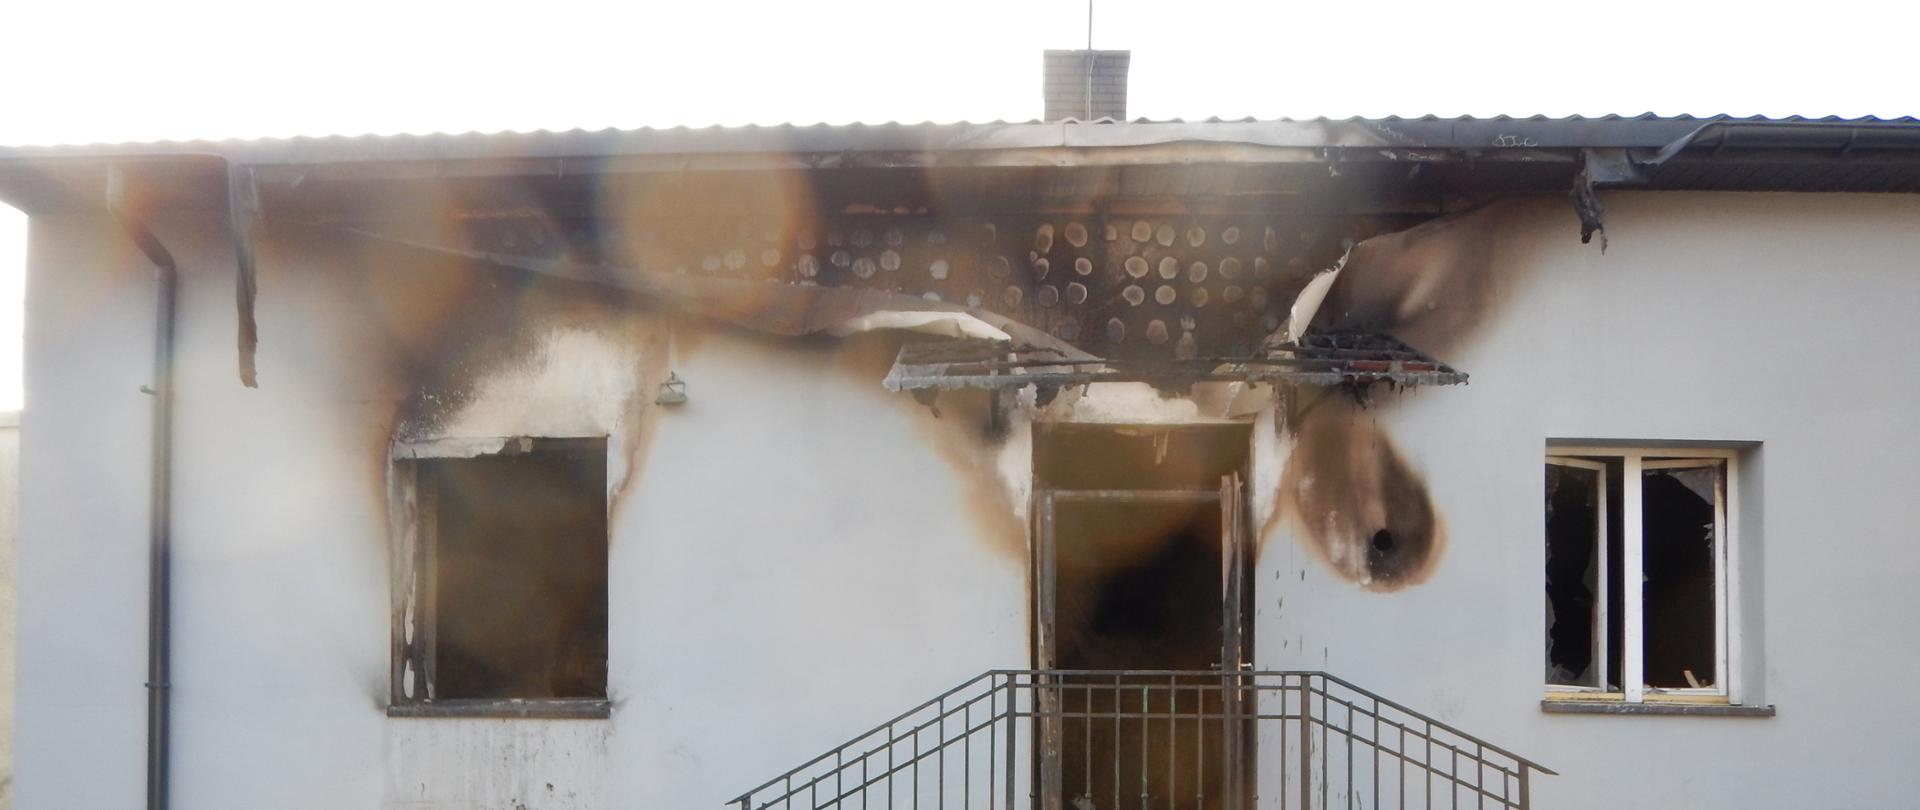 Zdjęcie przedstawia budynek mieszkalny, który w wyniku pożaru ma całkowicie zniszczone dwa pomieszczenia na parterze oraz część poddasza.